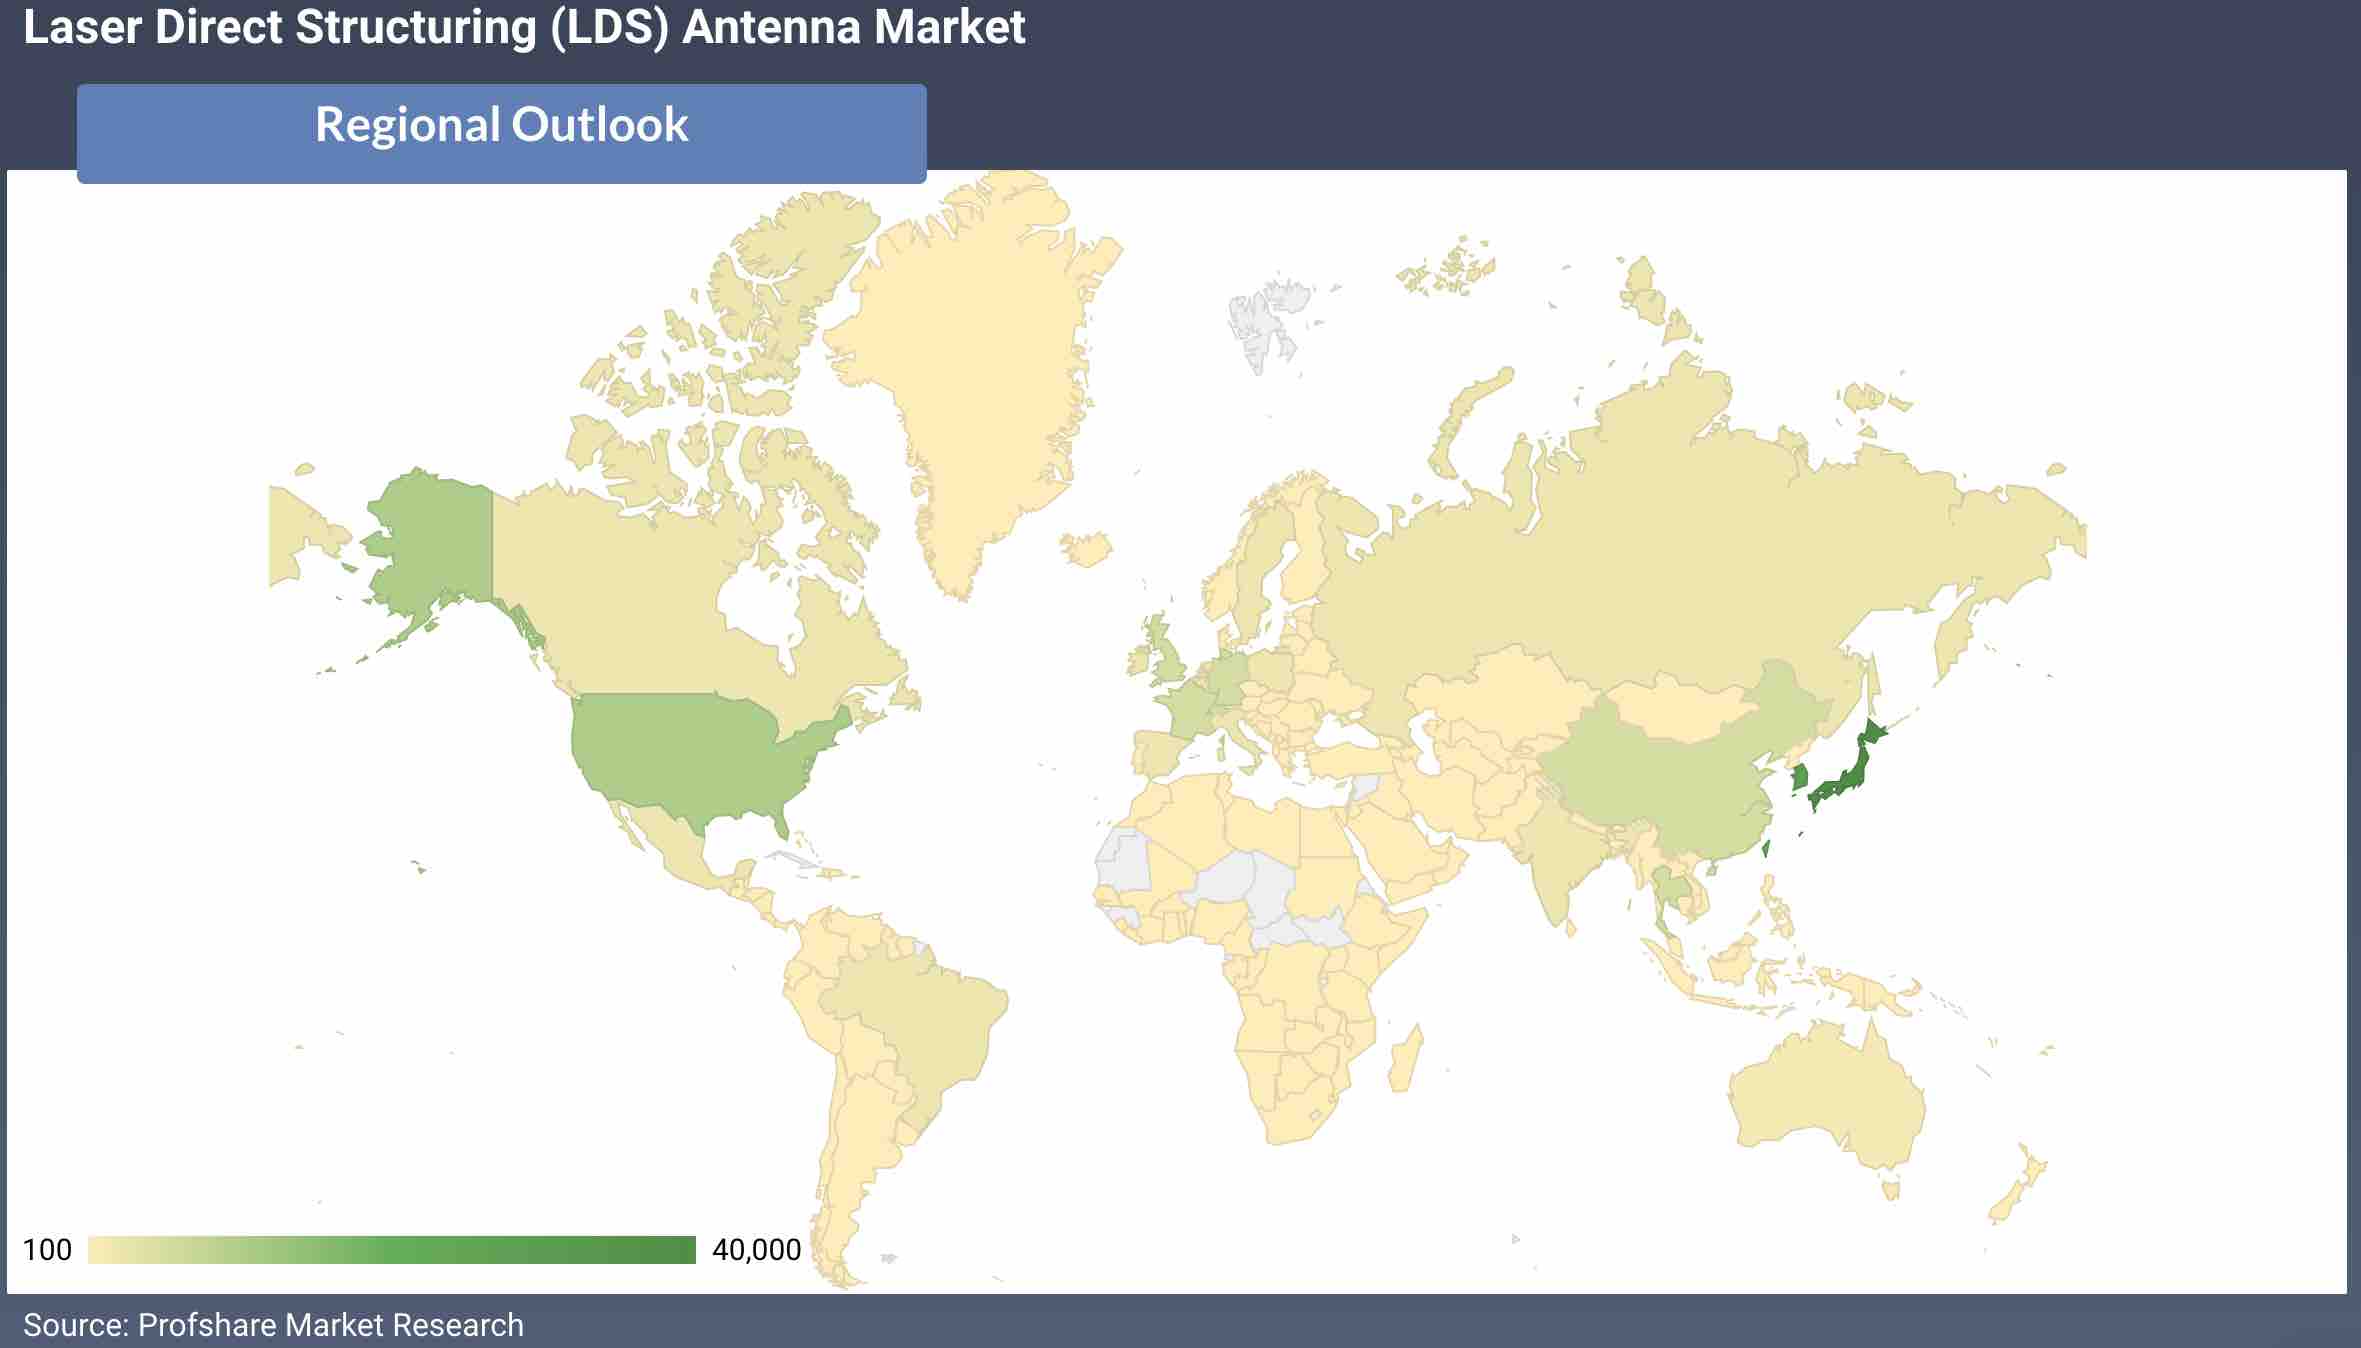 Laser Direct Structuring (LDS) Antenna Market Regional Analysis